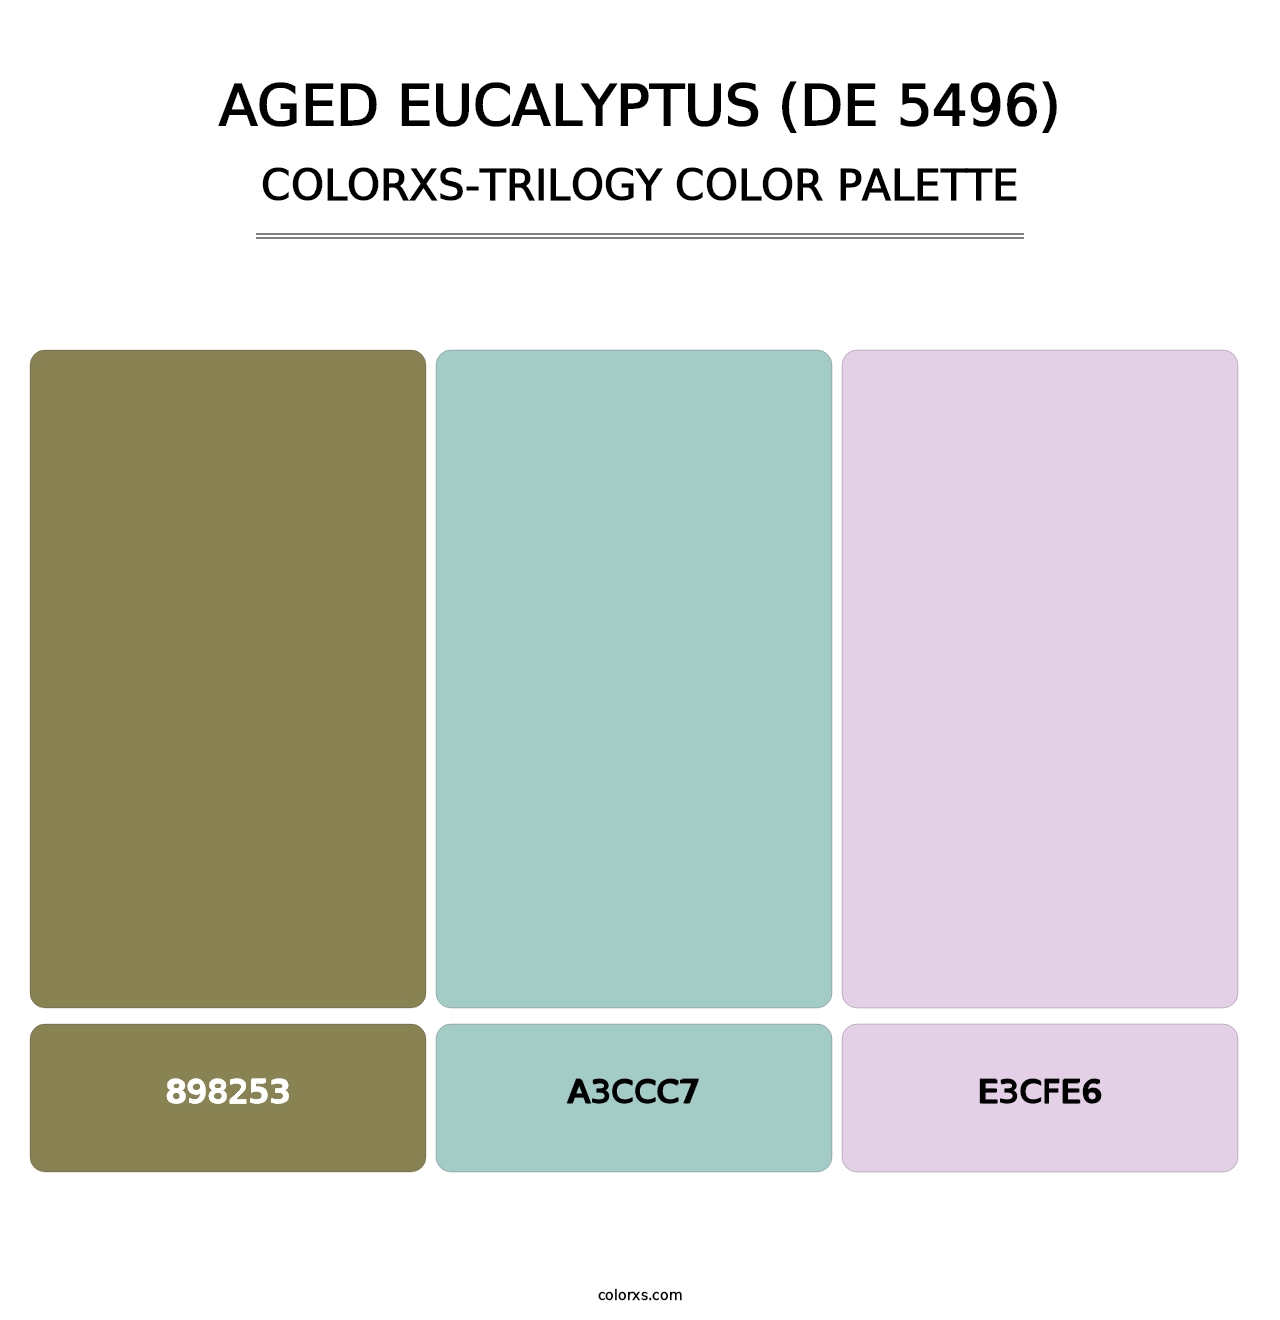 Aged Eucalyptus (DE 5496) - Colorxs Trilogy Palette